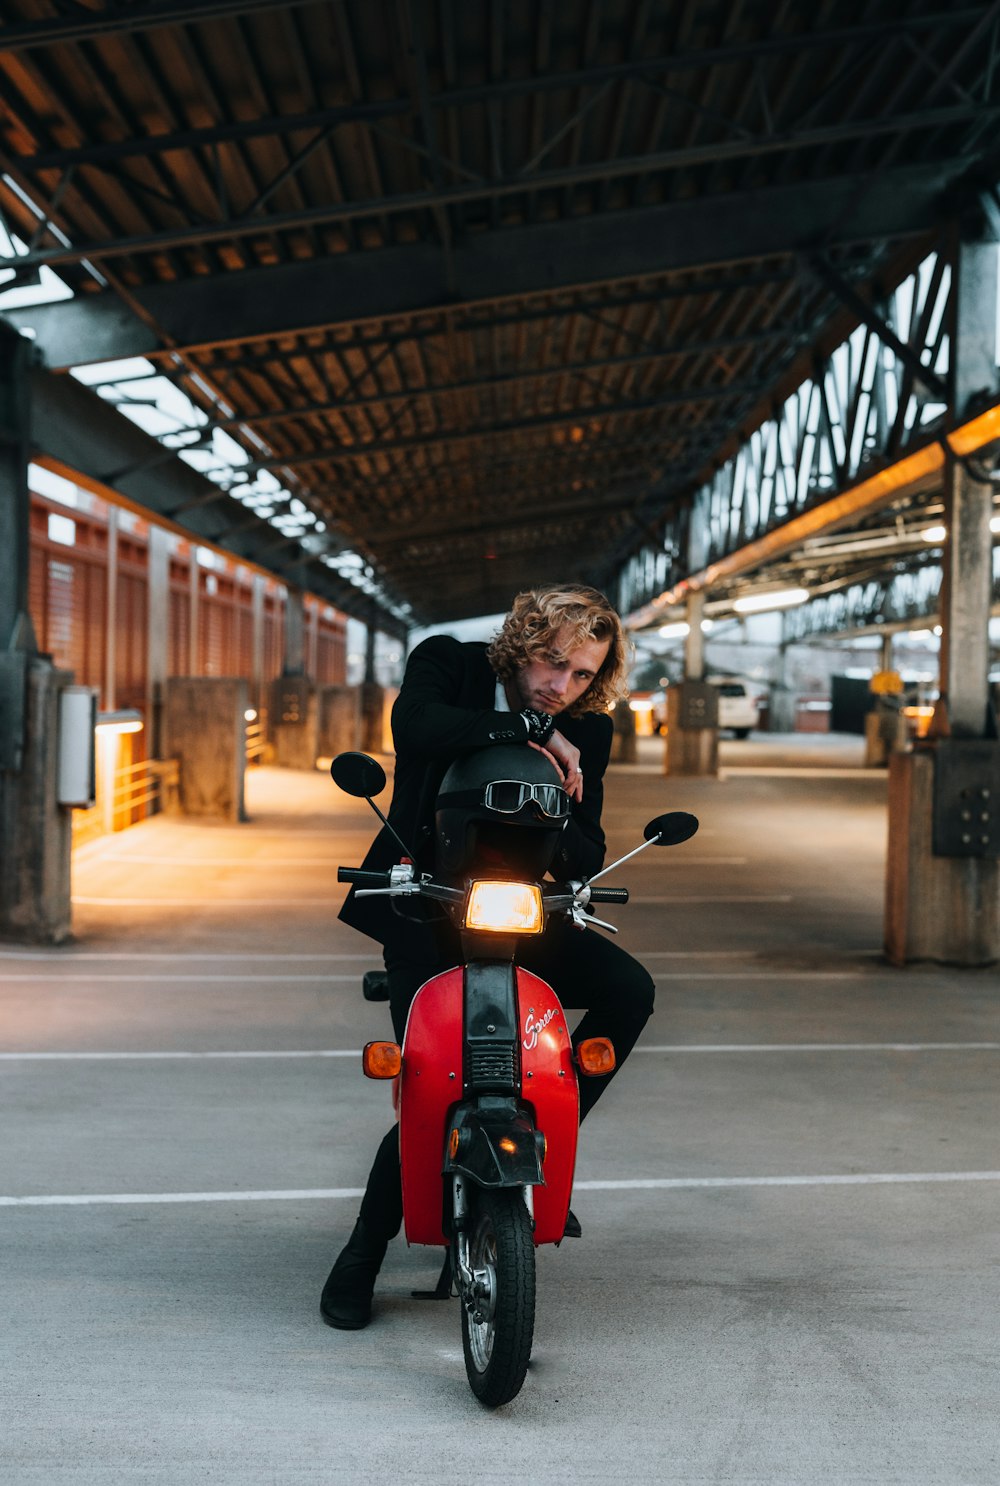 Mann in schwarzer Jacke fährt tagsüber auf rotem Motorrad auf der Straße